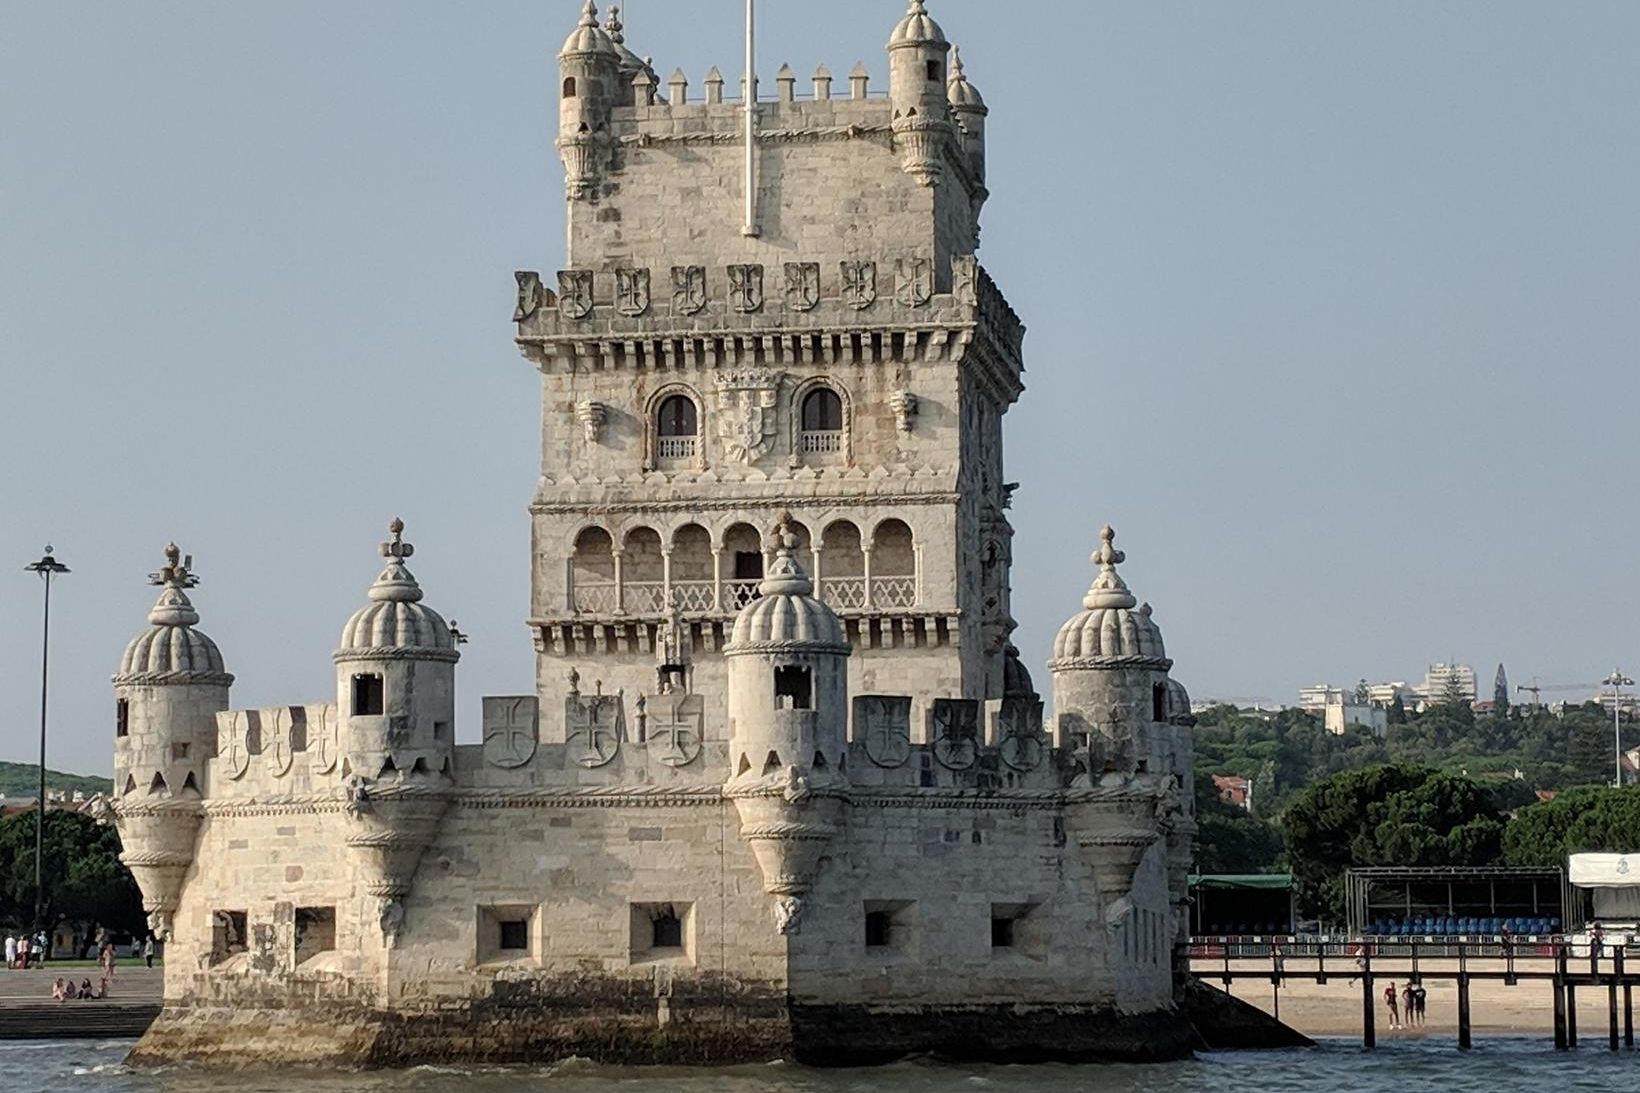 Eitt af þekktustu kennileitum portúgölsku höfuðborgarinnar Lissabon, Belem-turninn, Torre de …